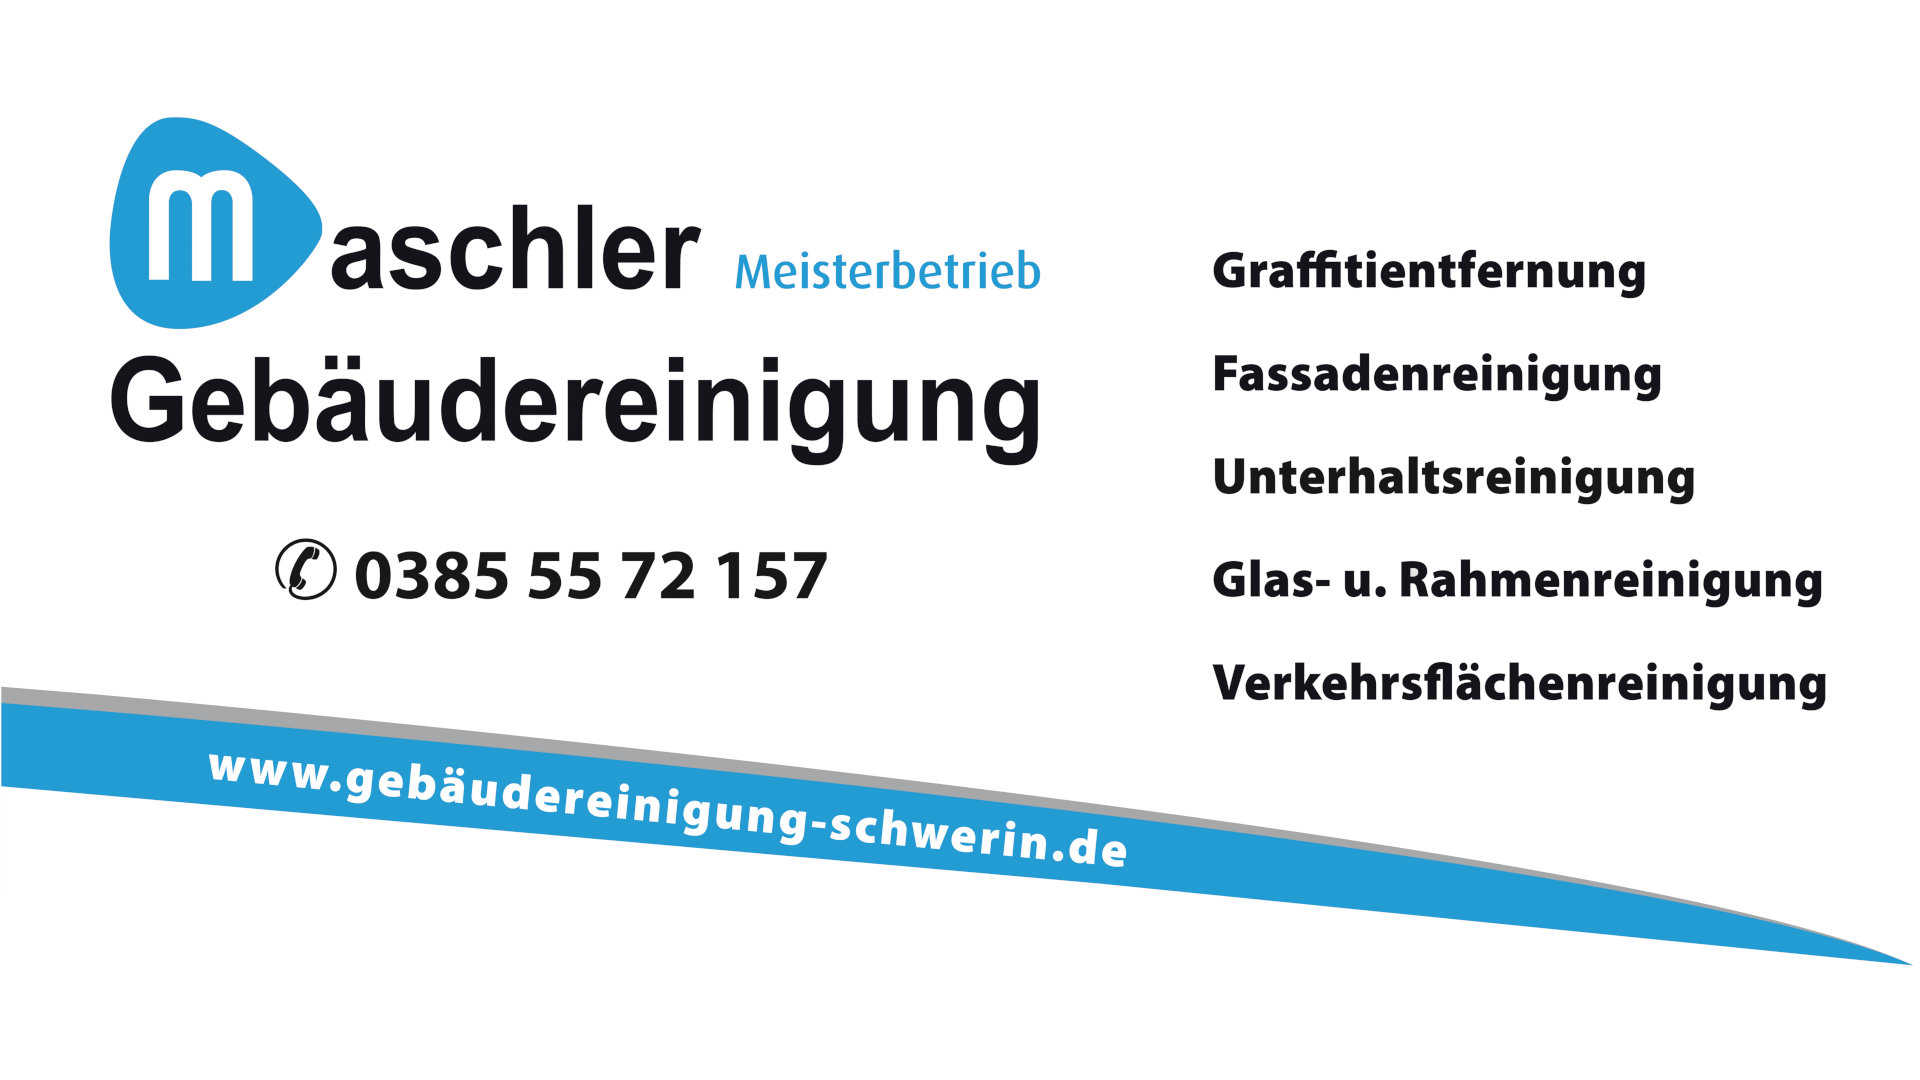 Kontakt - Gebäudereinigung Maschler Schwerin